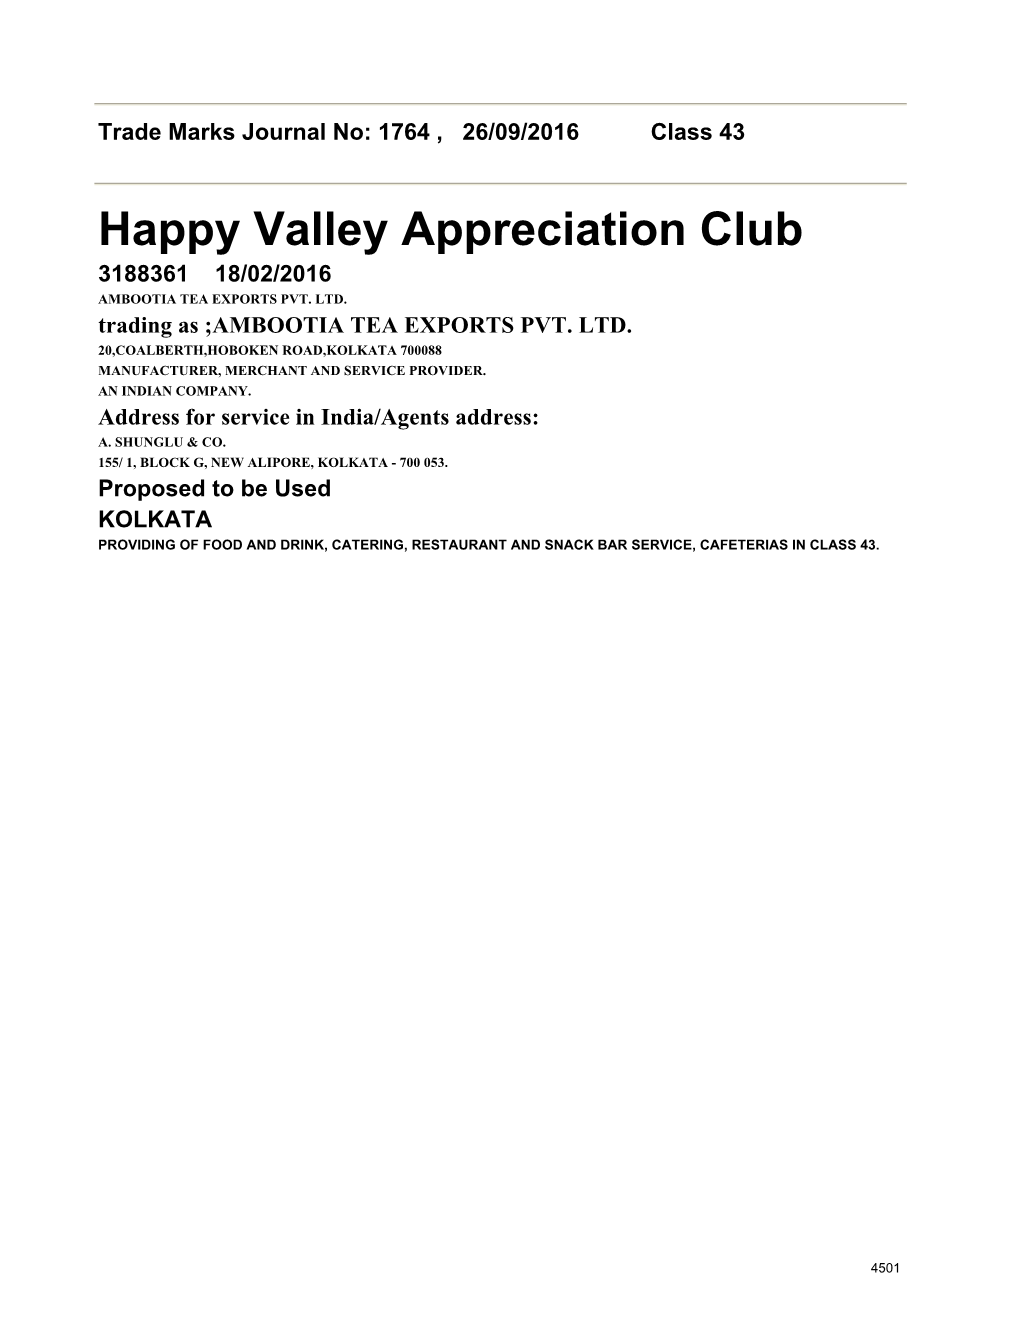 Happy Valley Appreciation Club 3188361 18/02/2016 AMBOOTIA TEA EXPORTS PVT